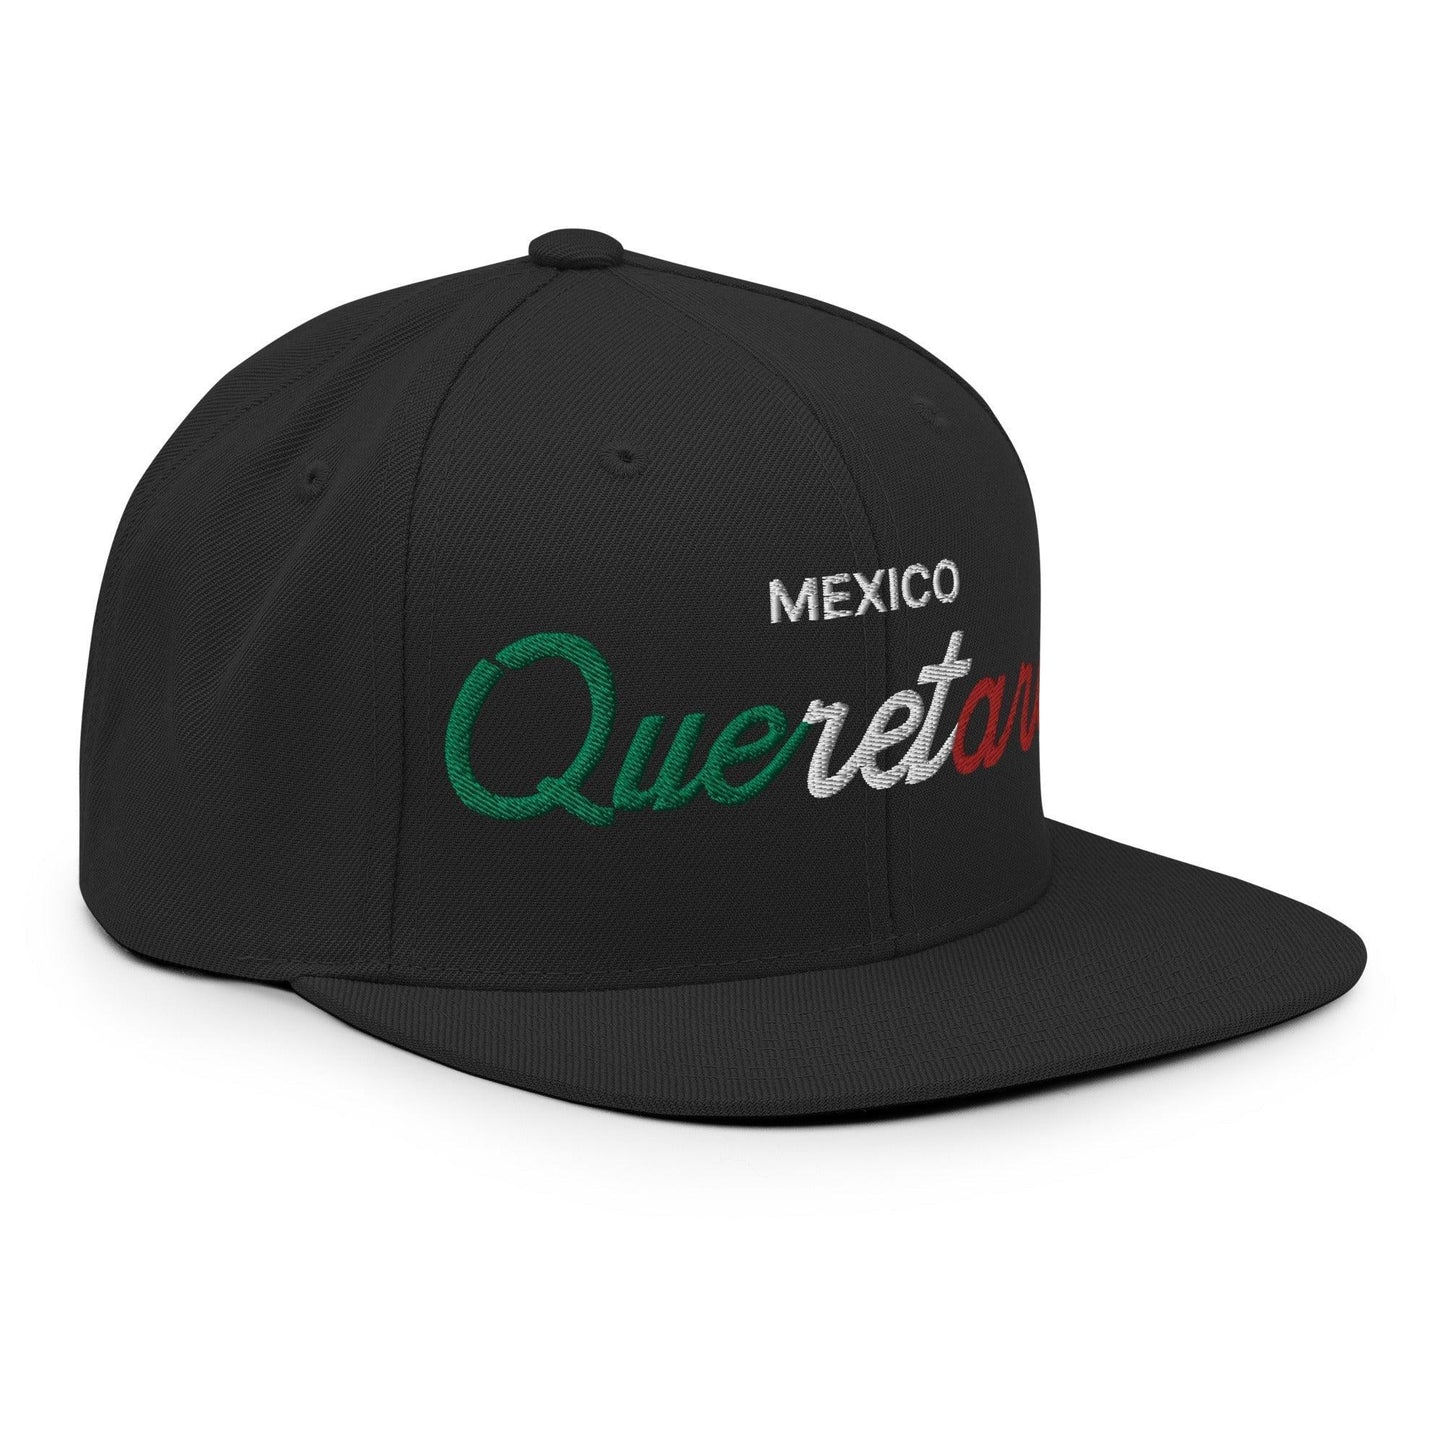 Queretaro Mexico Vintage Sports Script Snapback Hat Black